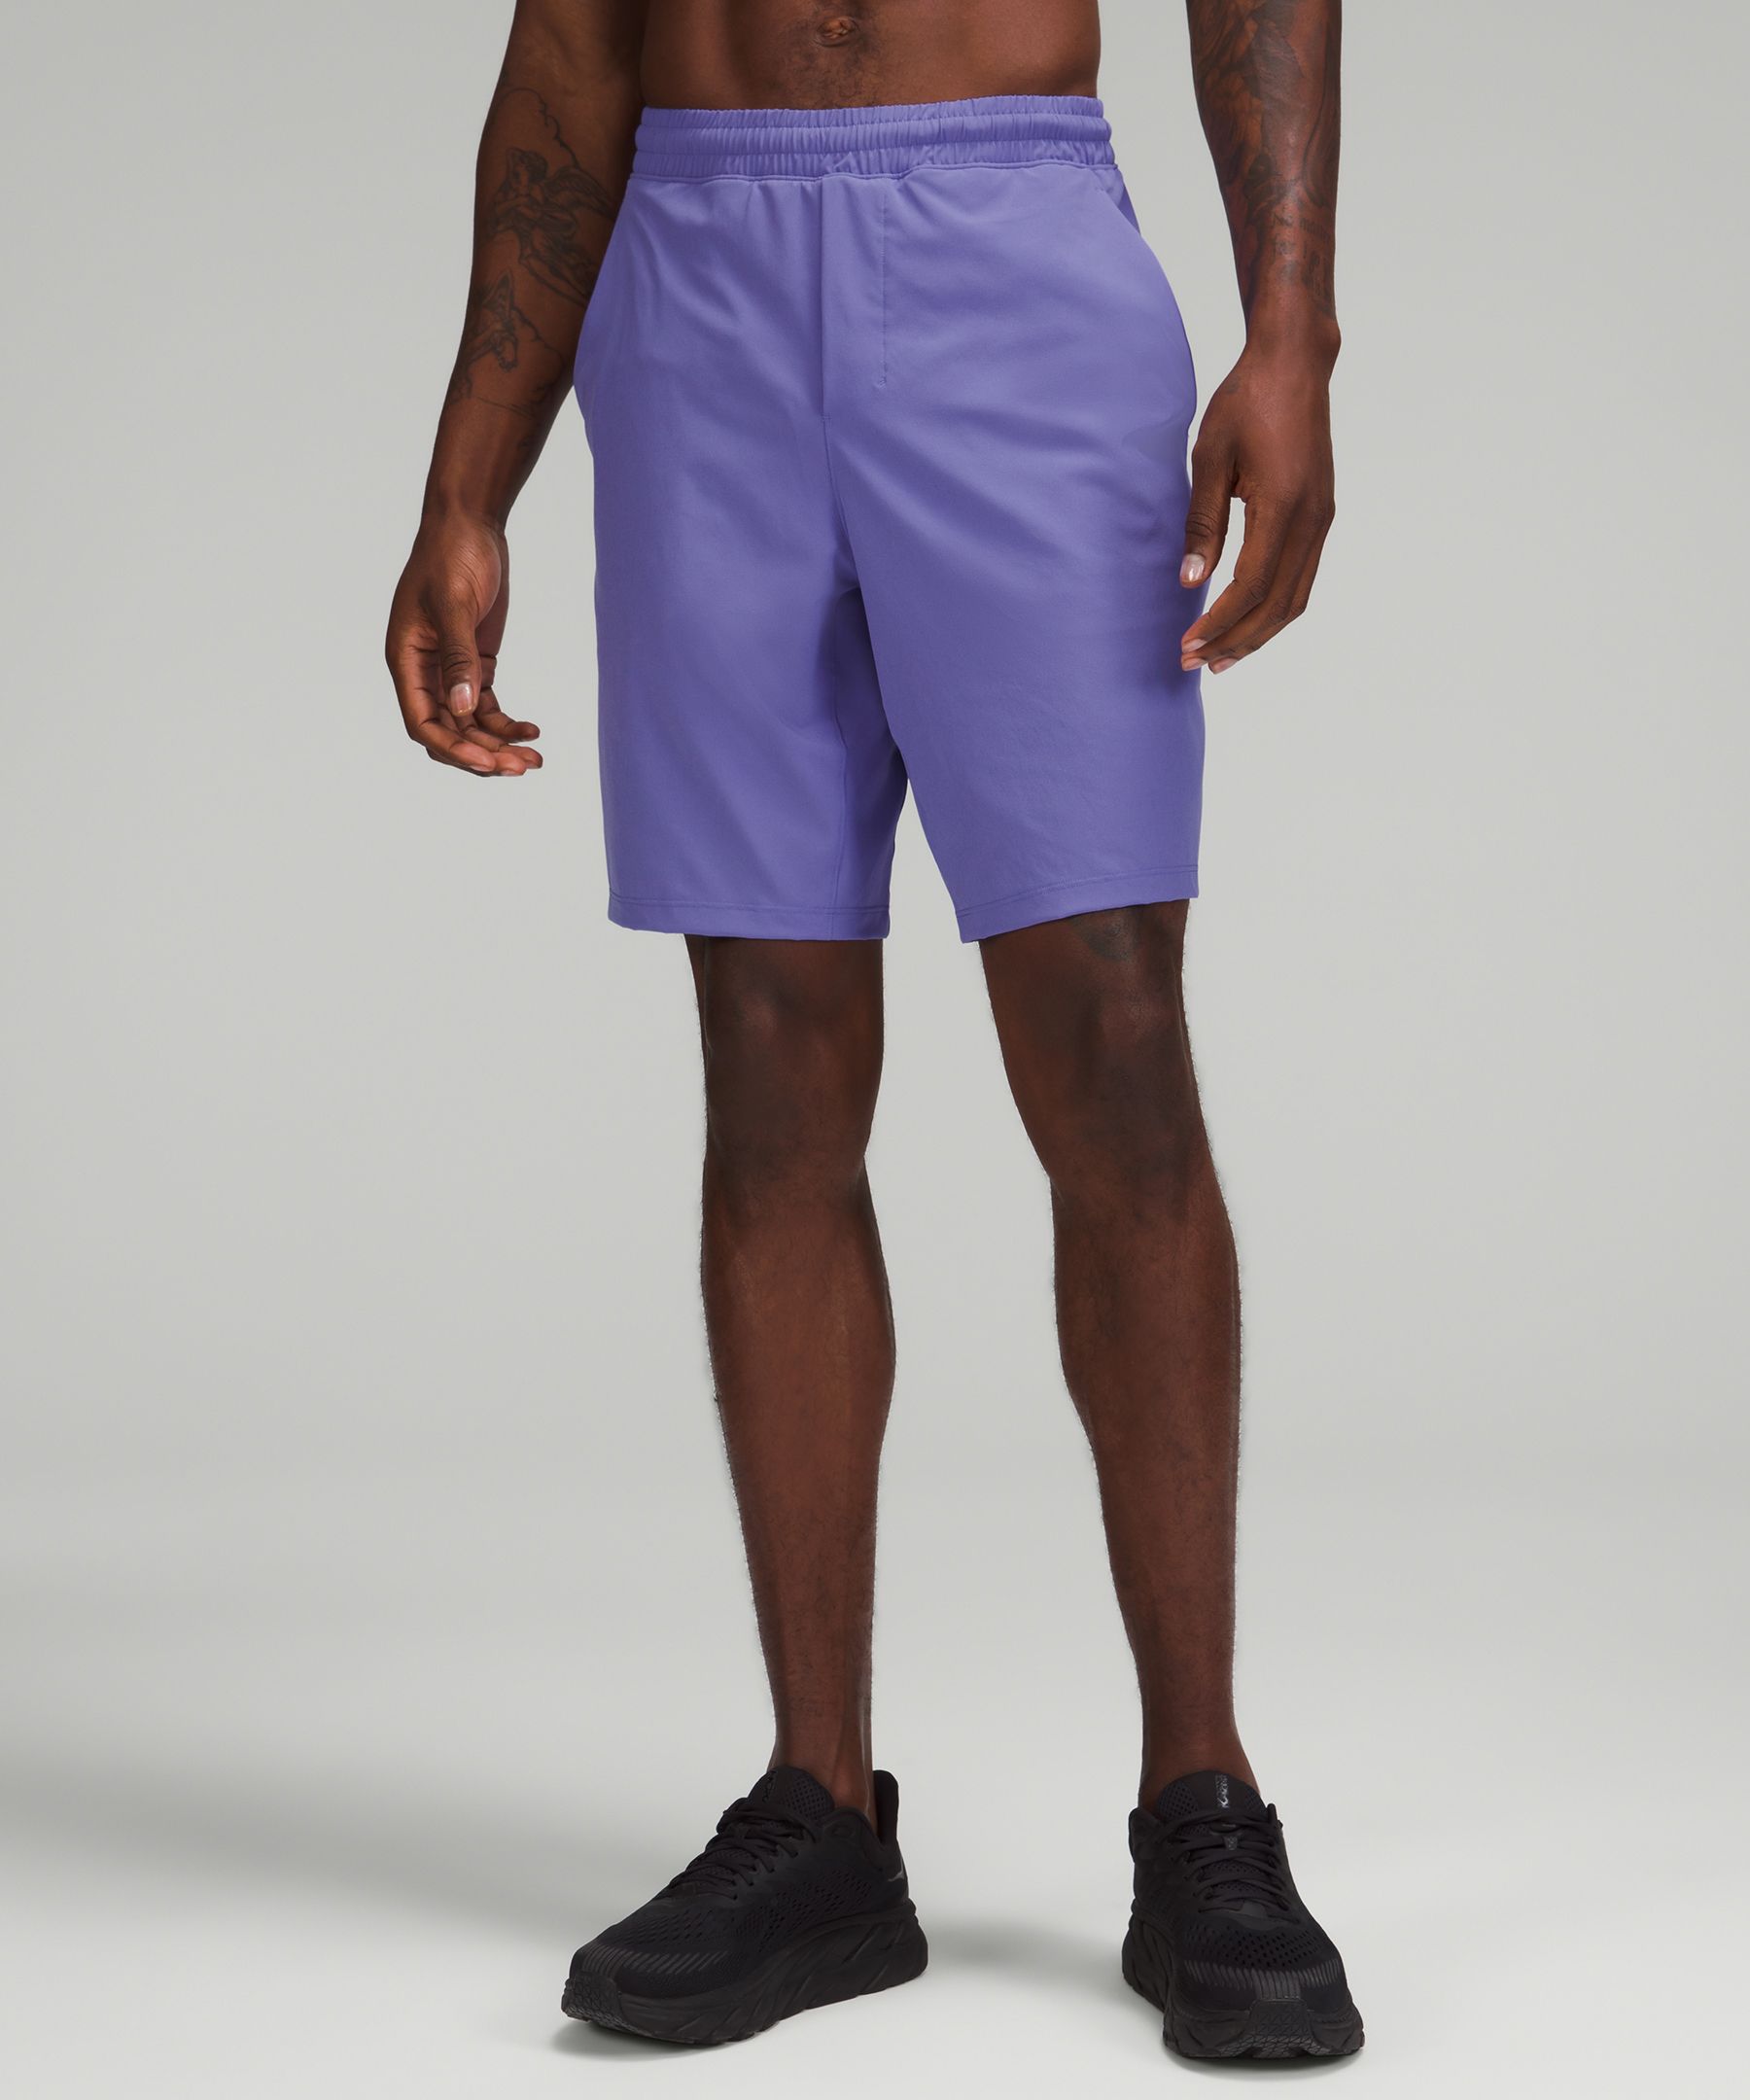 Lululemon Pace Breaker Lined Shorts 9" In Purple